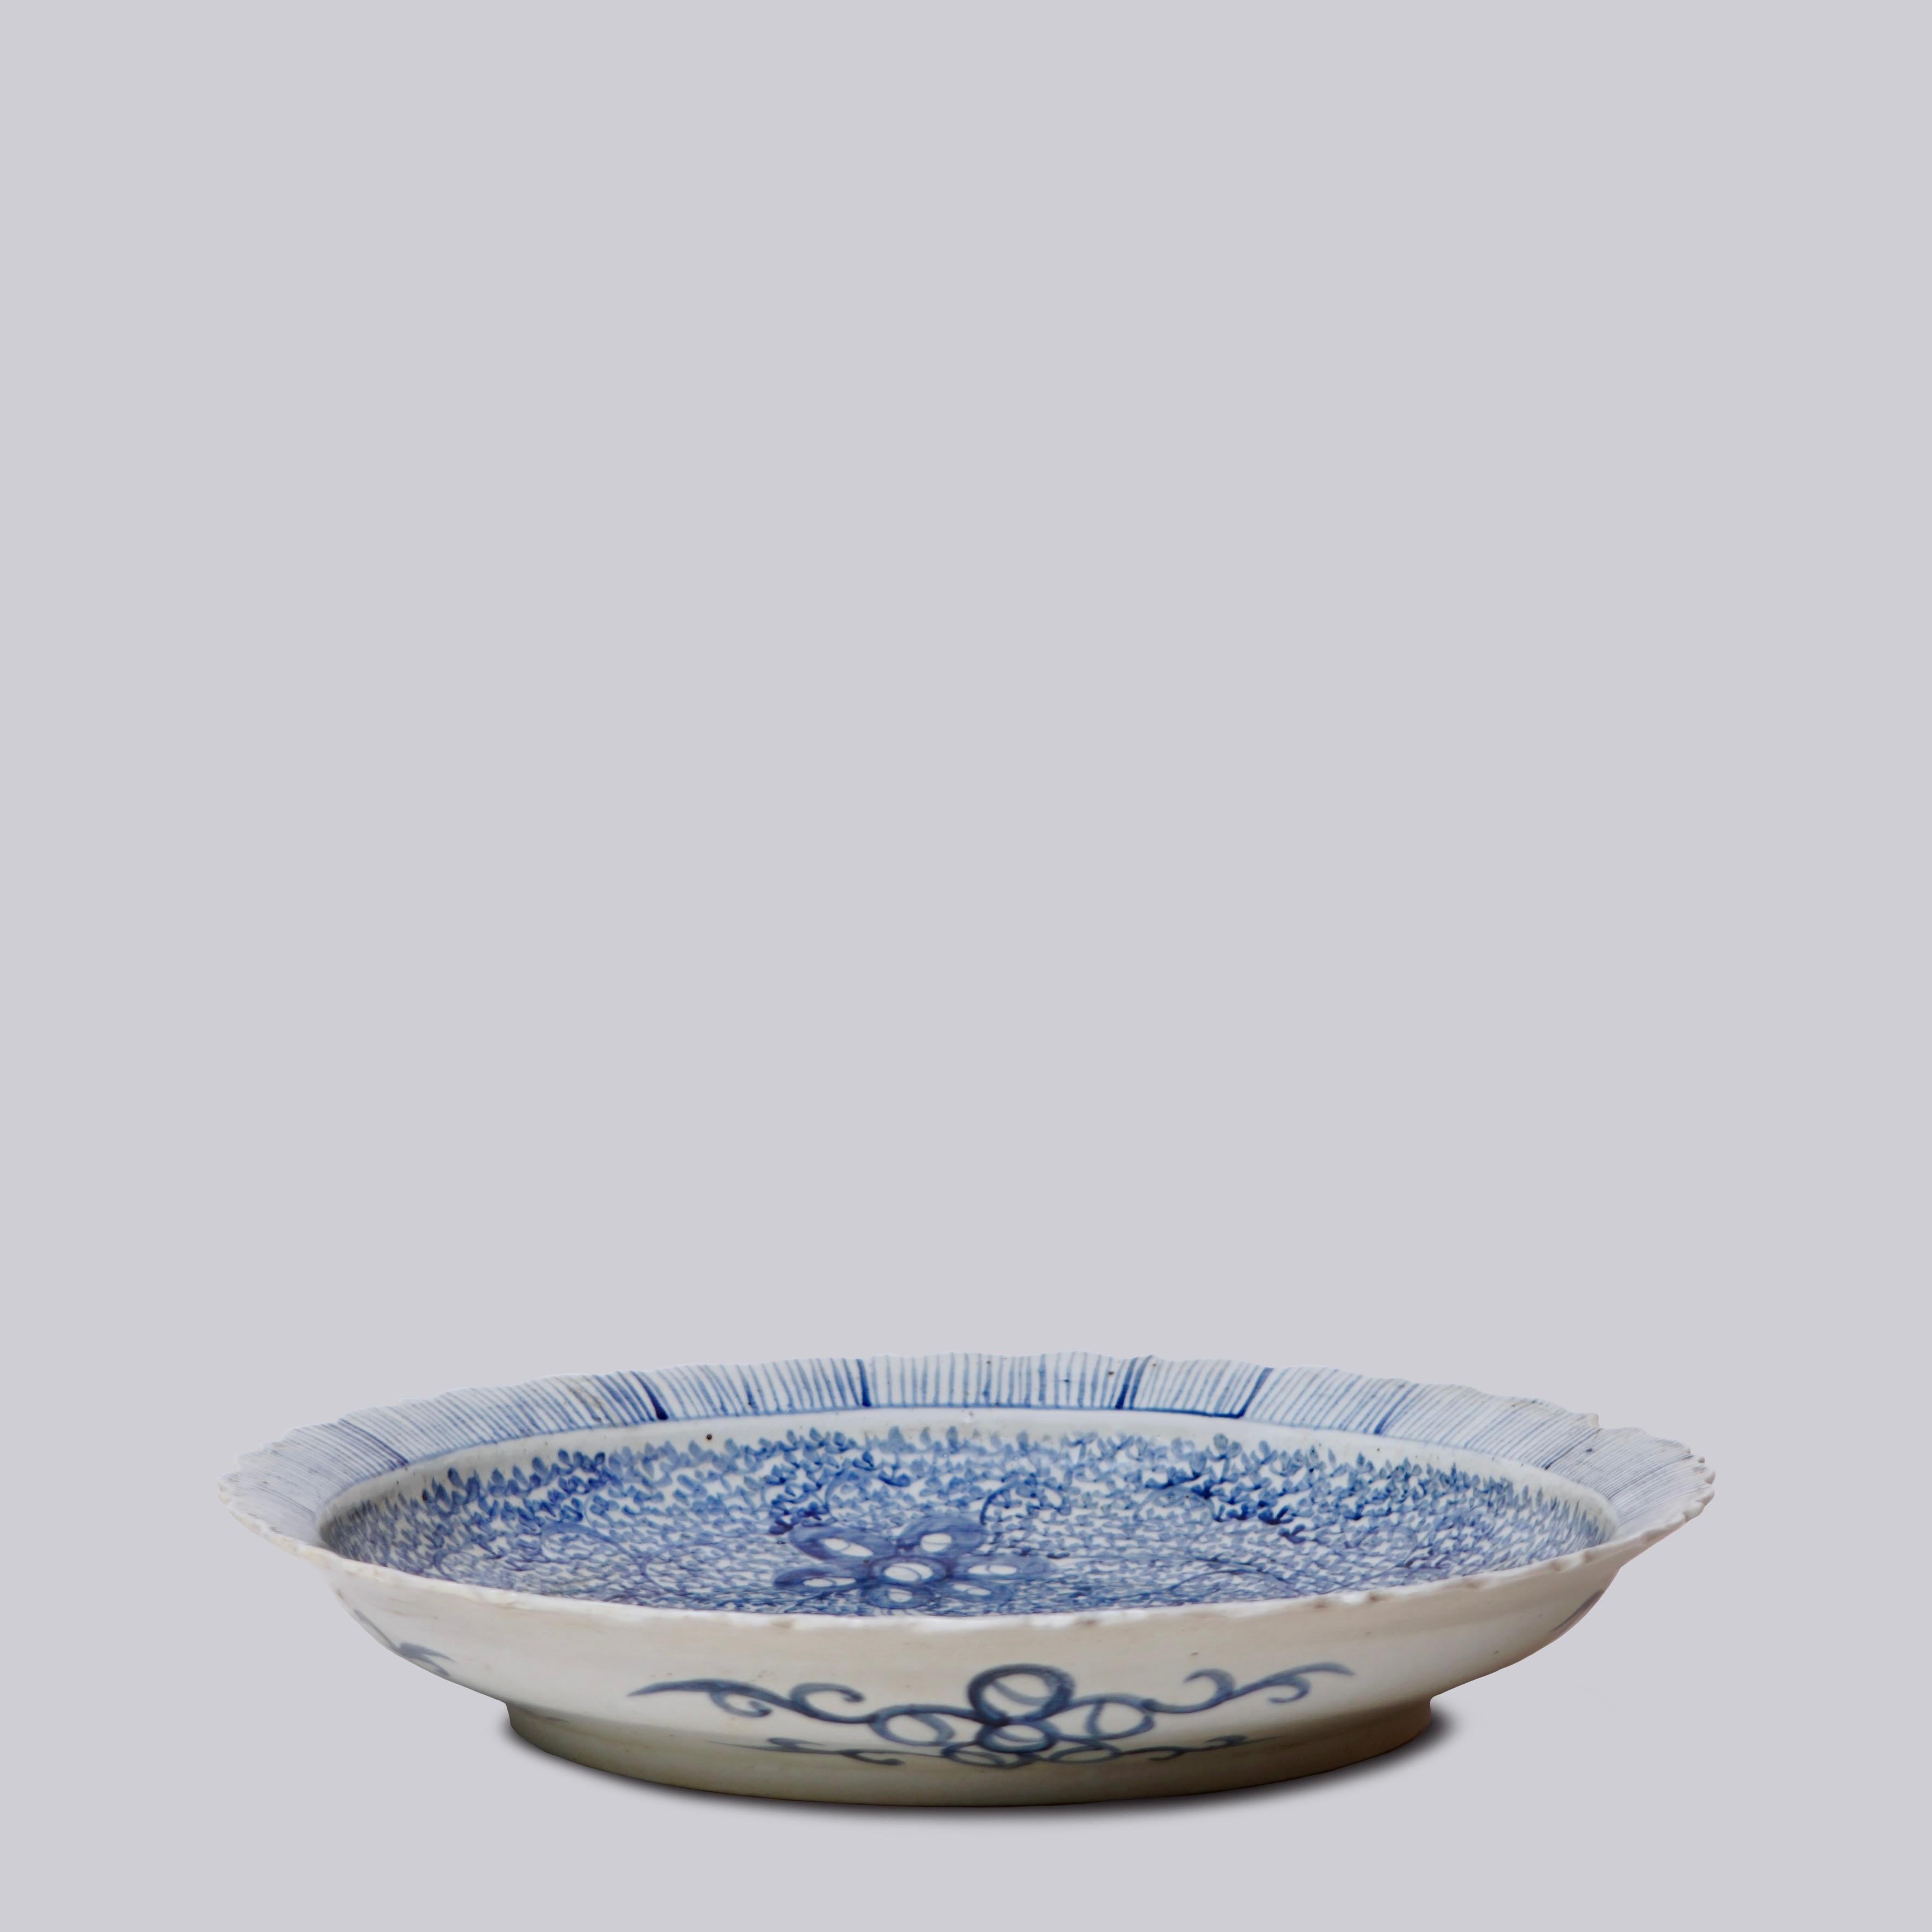 Diese Platte ist ein traditioneller, rustikaler Stil aus Jingdezhen, einer Stadt, die lange Zeit unter kaiserlicher Schirmherrschaft stand.  Aus dem lockeren, handgemalten und leicht abstrakten Design lässt sich schließen, dass dieses Stück für den